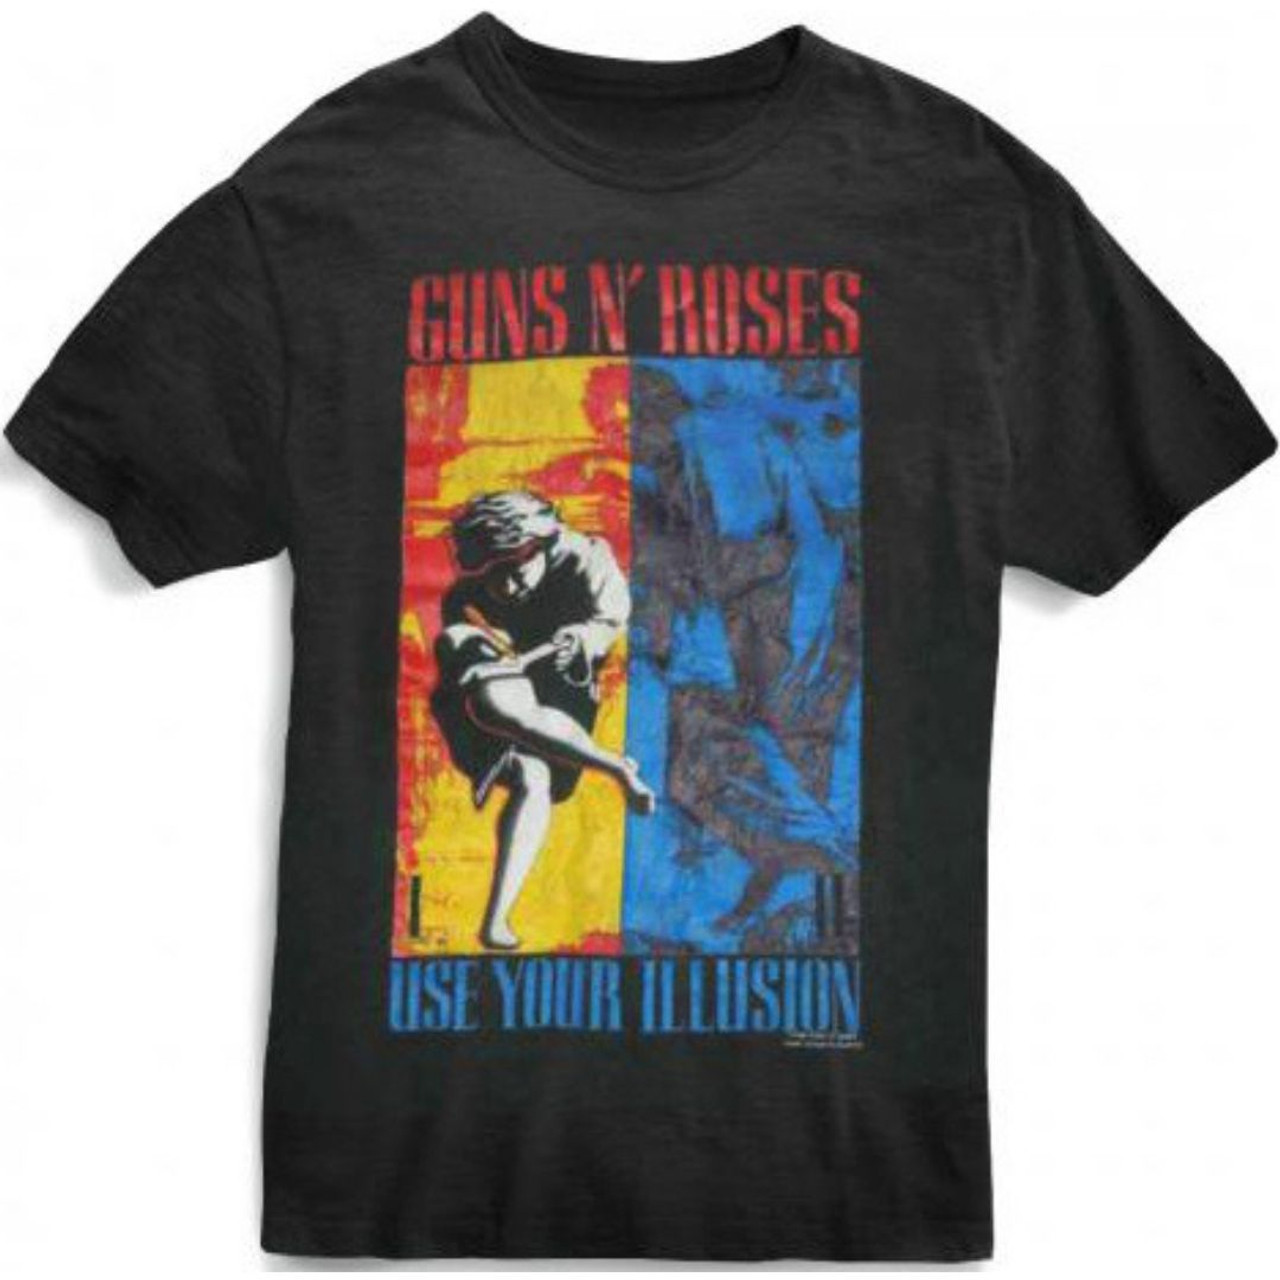 otte Permanent kronblad Guns N Roses Use Your Illusion Album Covers Art Men's T-shirt